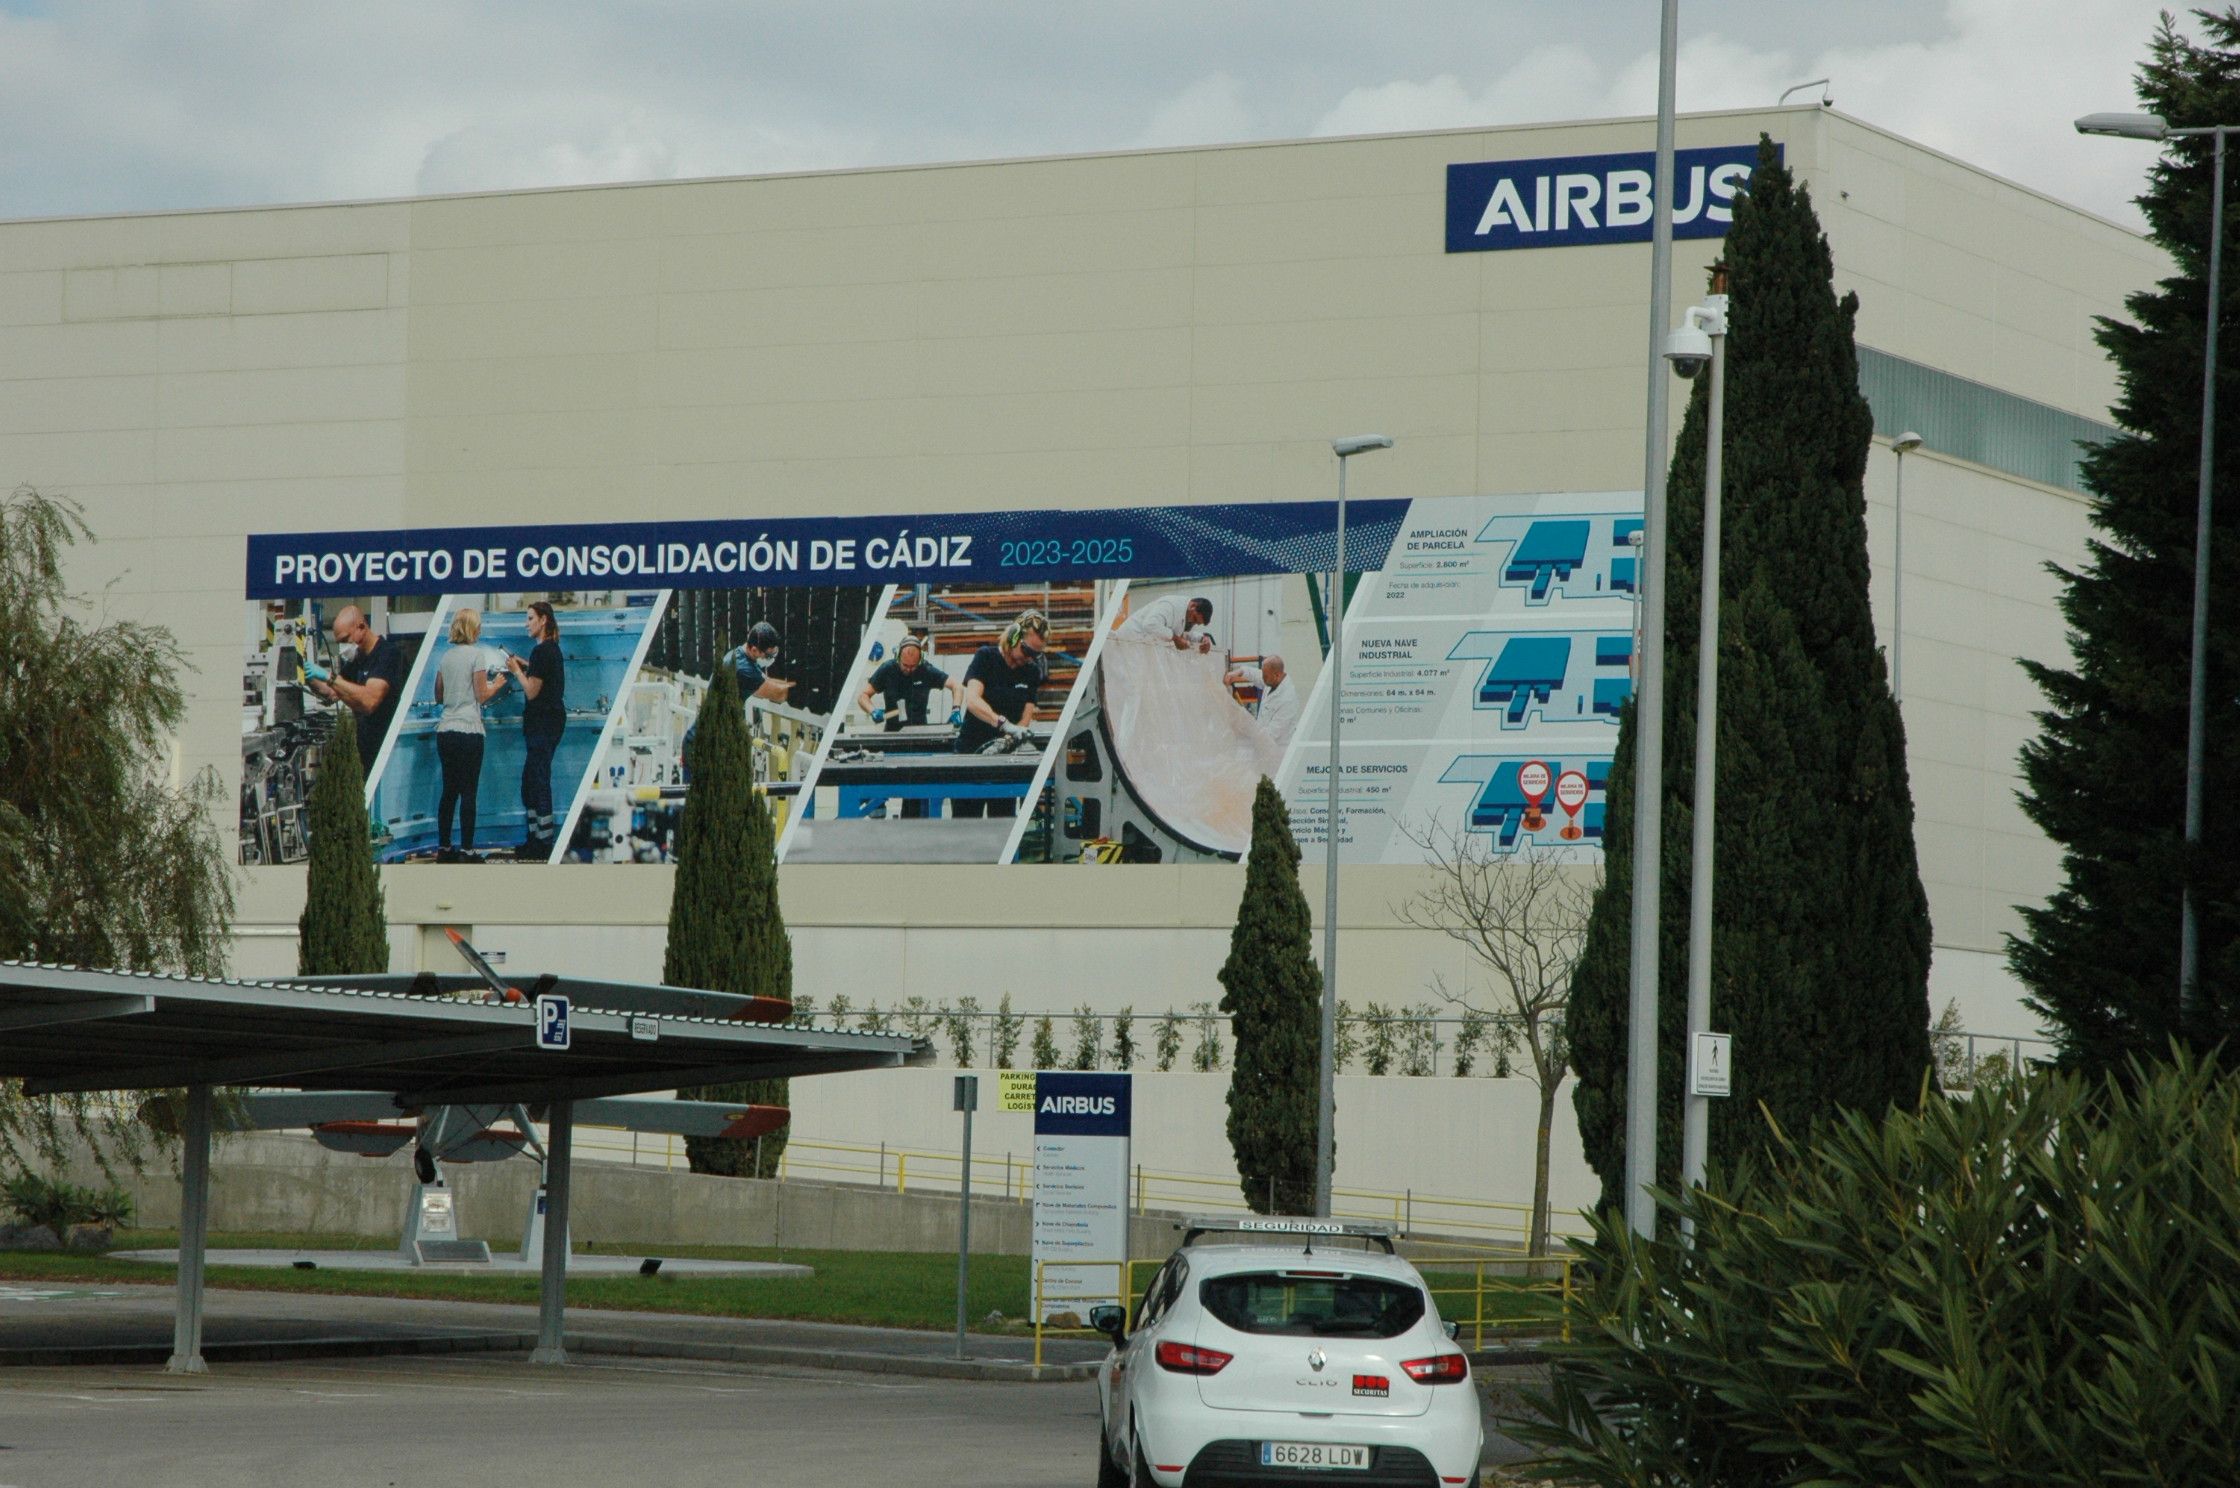 Airbus presentará este miércoles 11 su proyecto de consolidación en Cádiz 2023-2025.